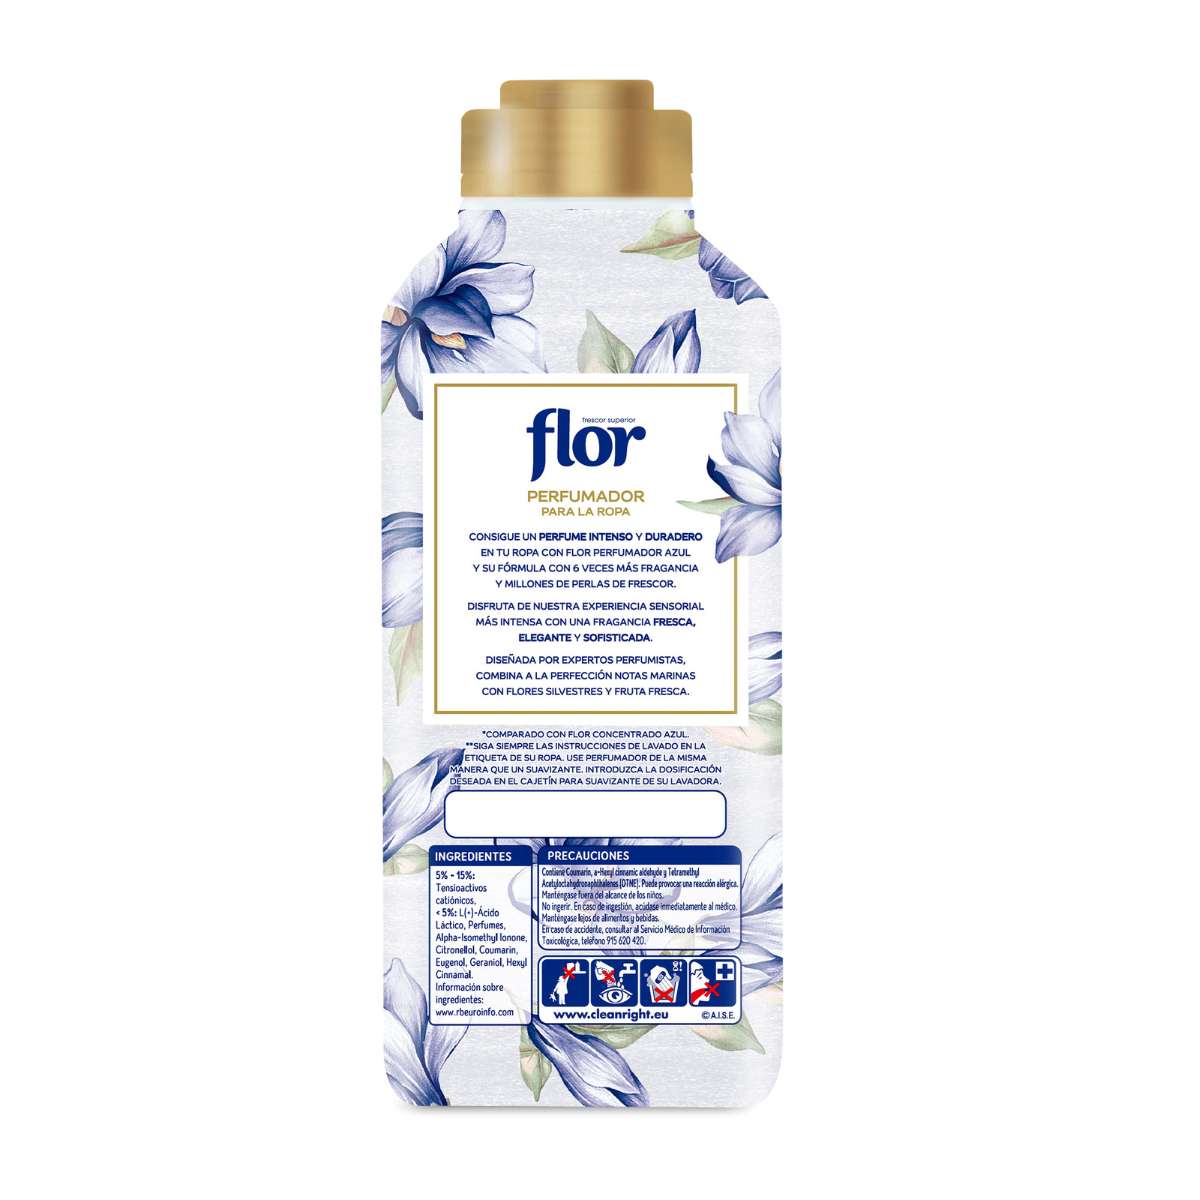 Perfumador Ropa Azul Flor 720Ml